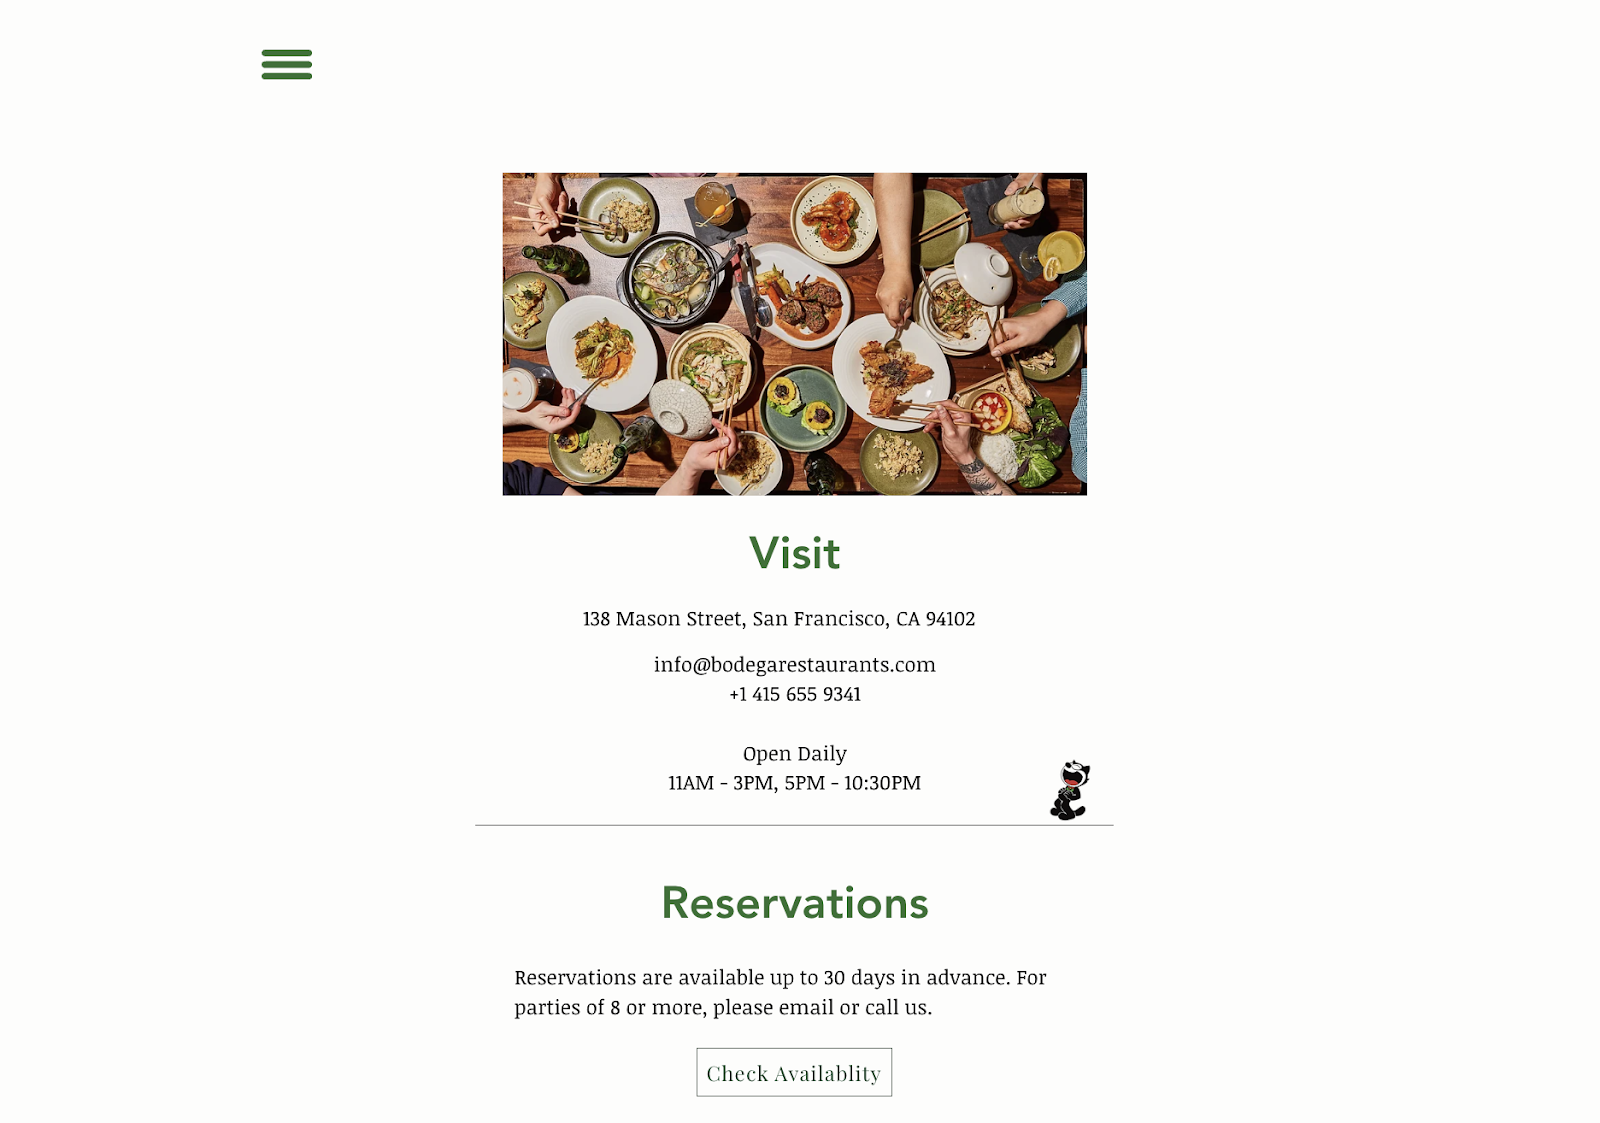 Idei de marketing pentru restaurante: un site simplu pentru restaurantul Bodega din San Francisco. Pagina web include informații de contact, orele și un link de rezervare.